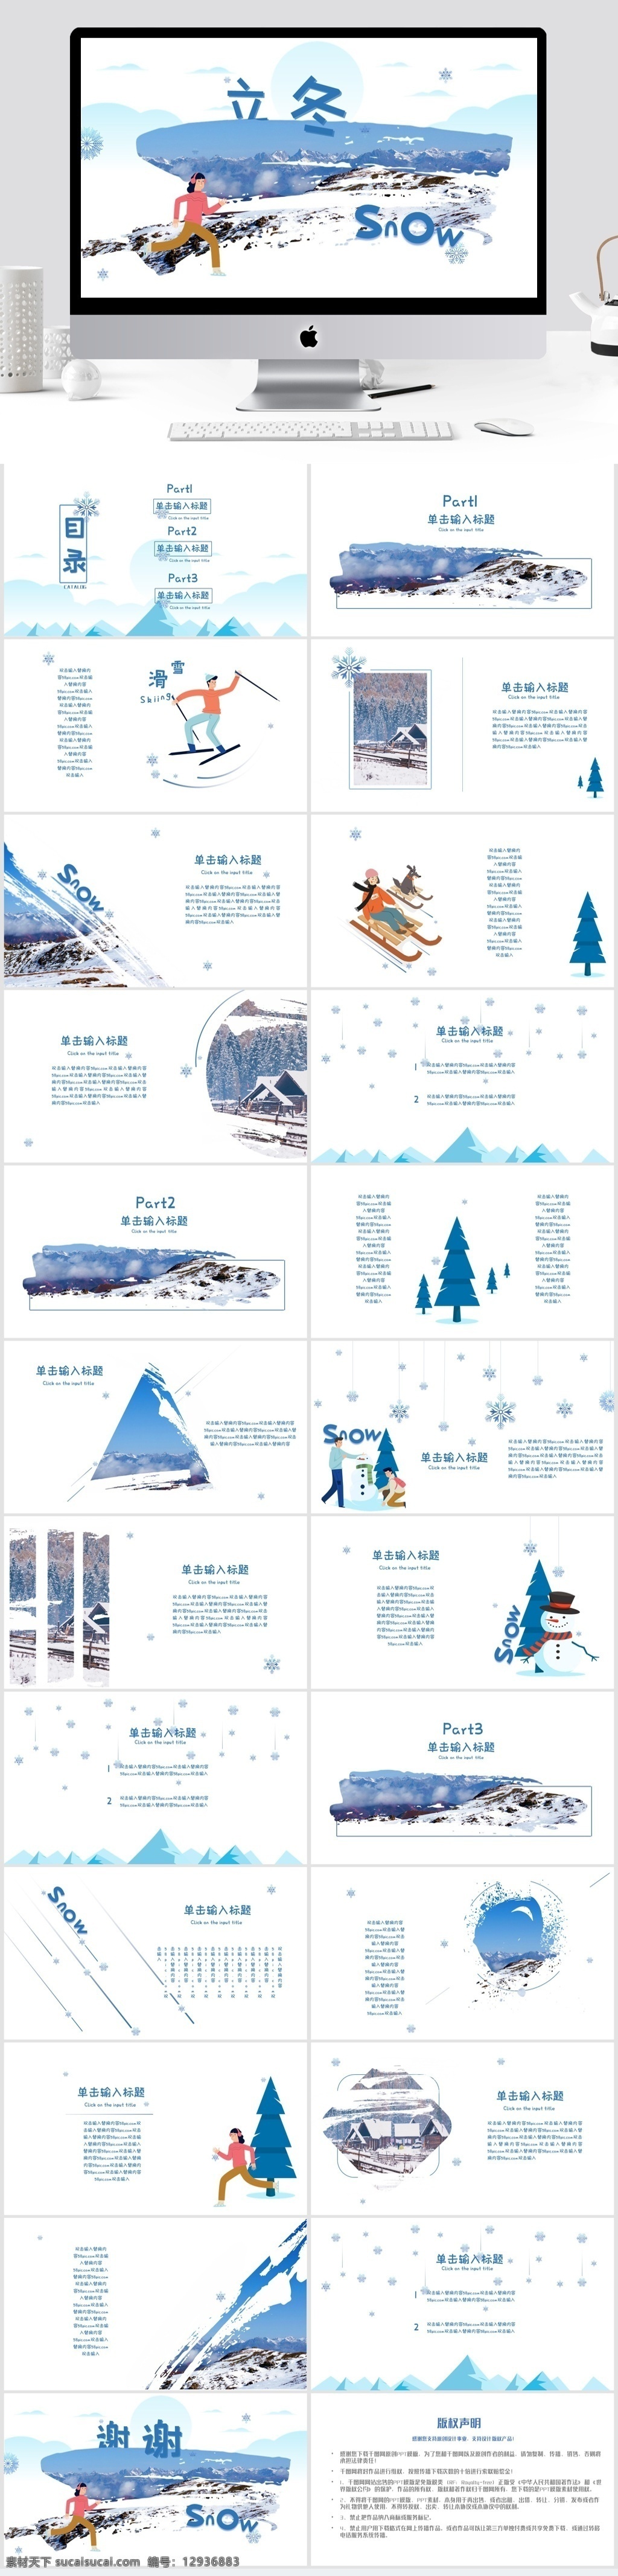 立冬 创意 模板 简约 雪 简洁 蓝色 笔刷 排版 节气 冬天 节日庆典